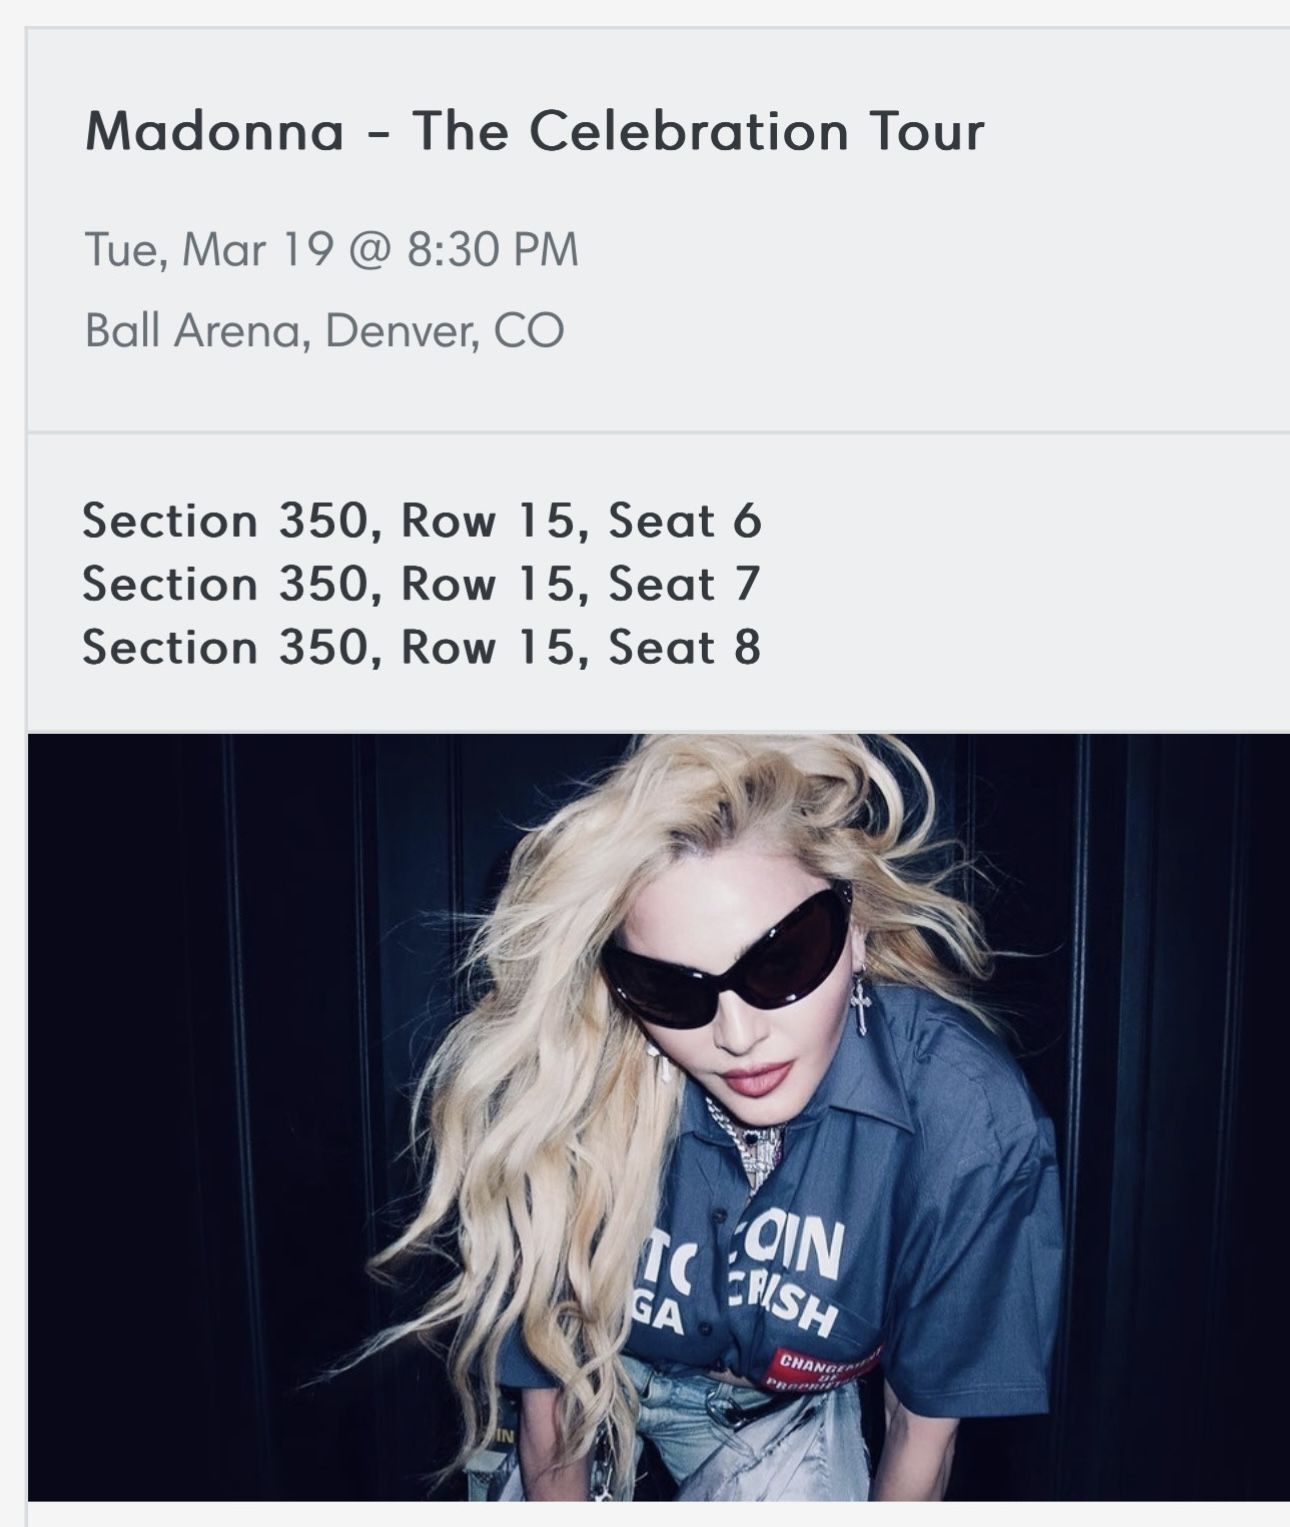 Madonna tickets